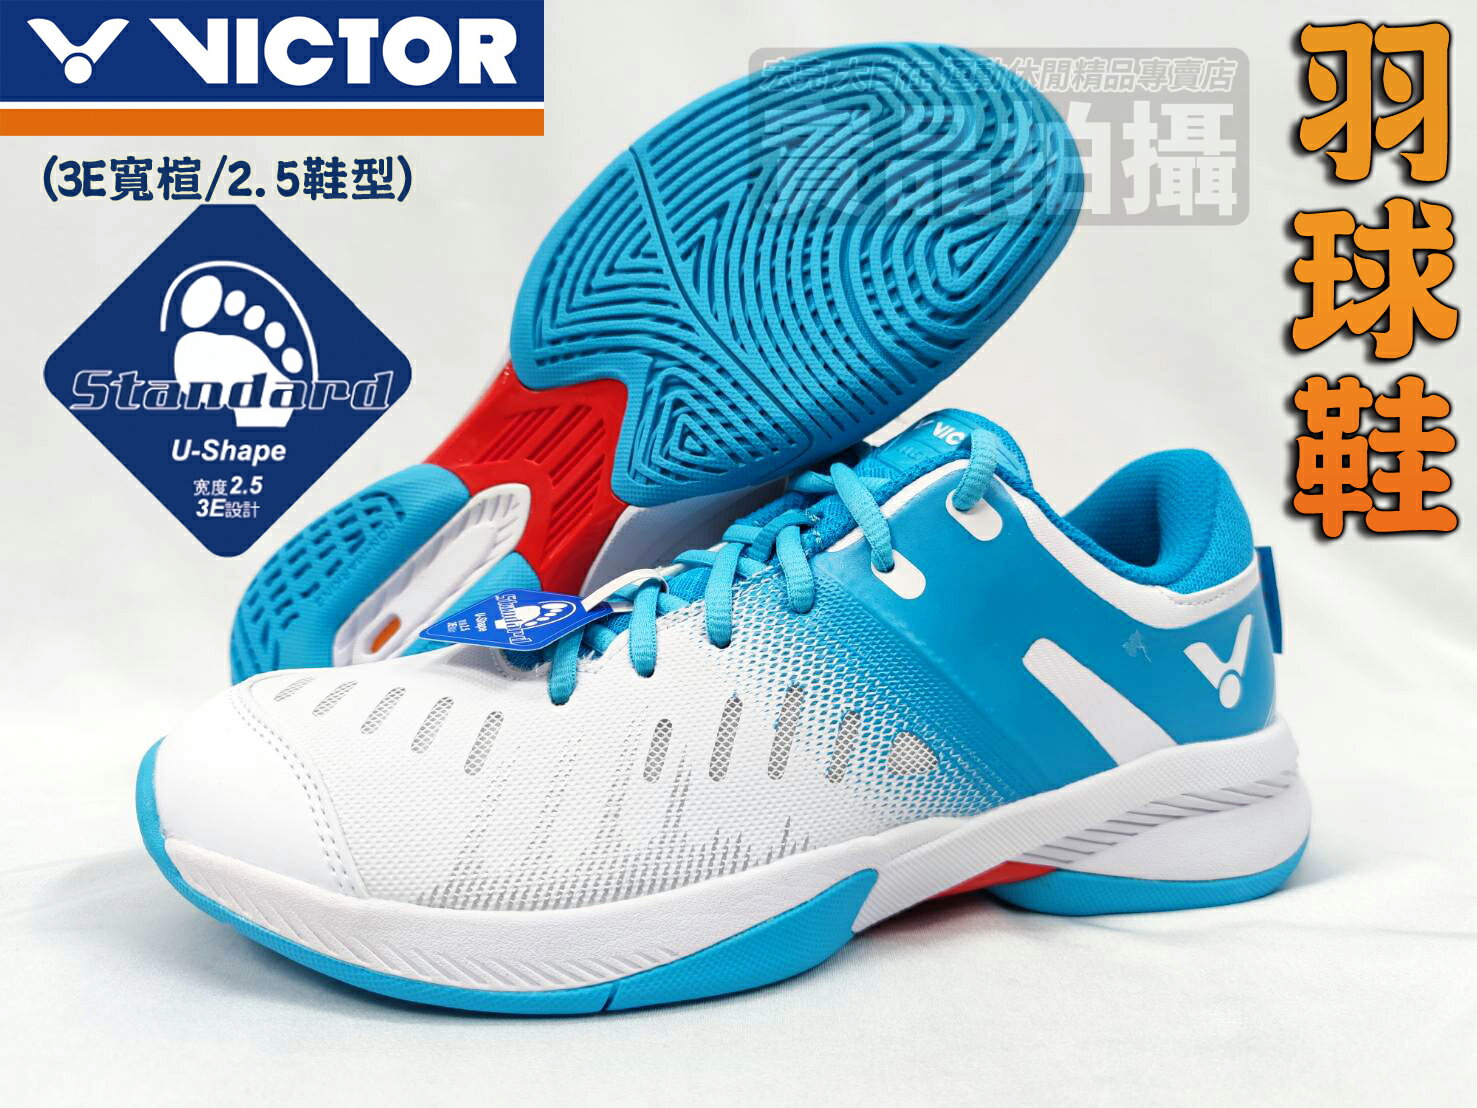 免運 VICTOR 勝利 羽球鞋 A670 羽毛球鞋 3E 寬楦 2.5 專業 白藍 SH-A670 AM 大自在